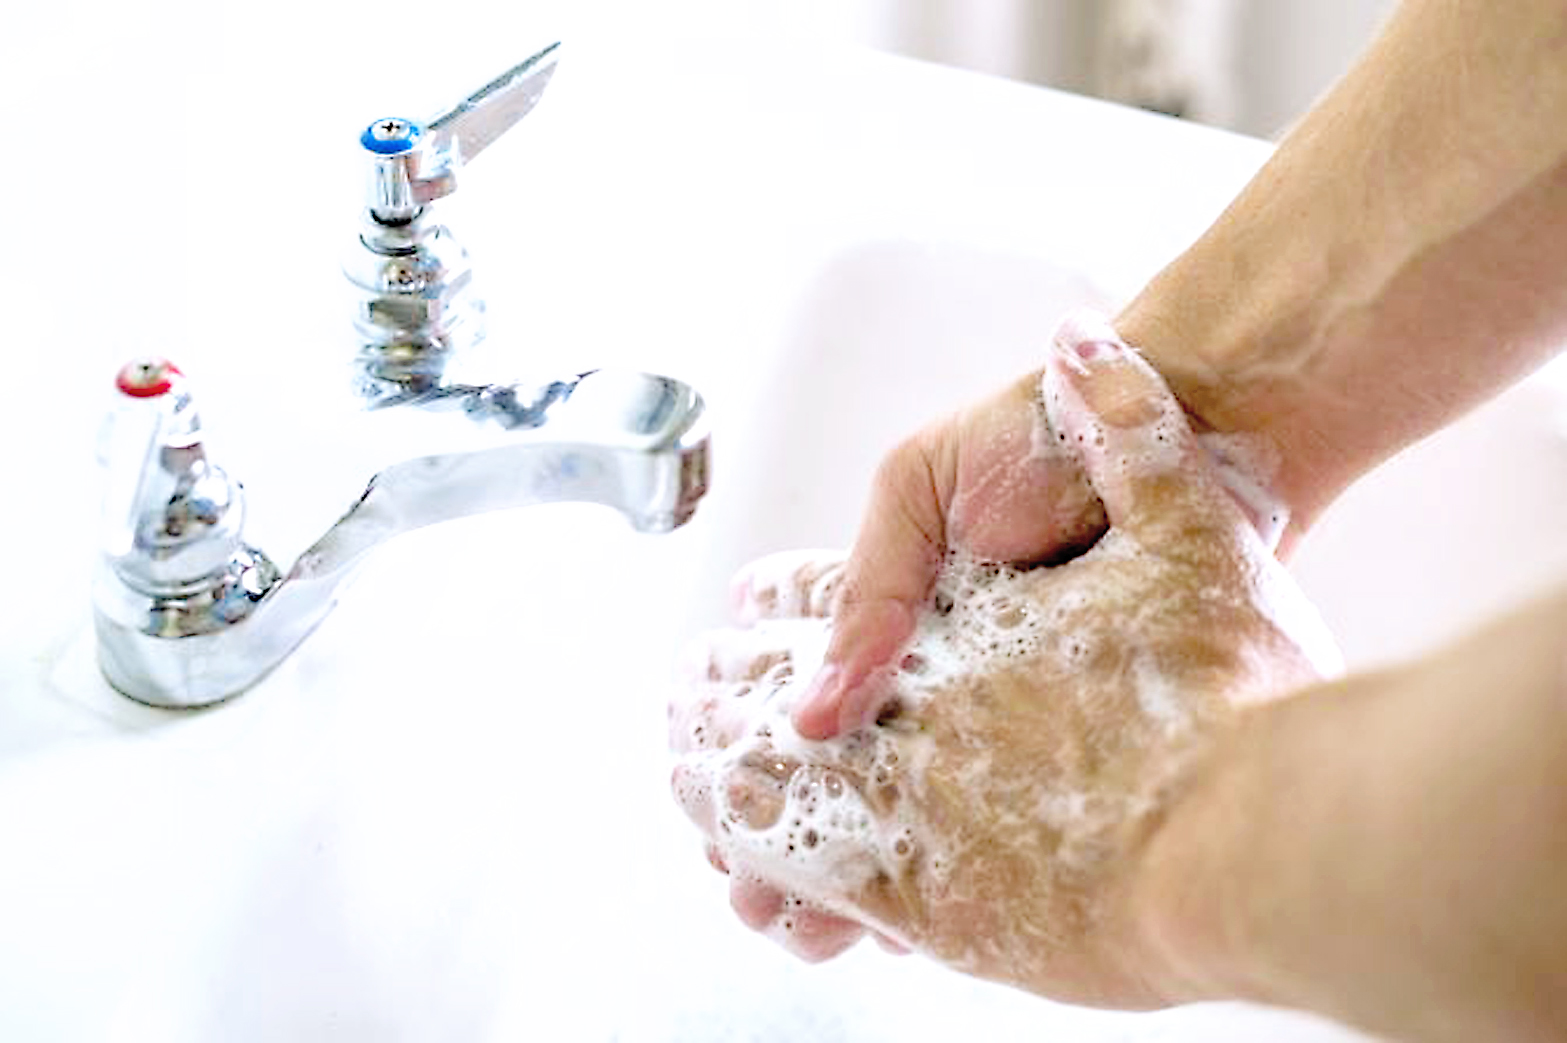 Lavarse correctamente las manos ayuda a eliminar bacterias